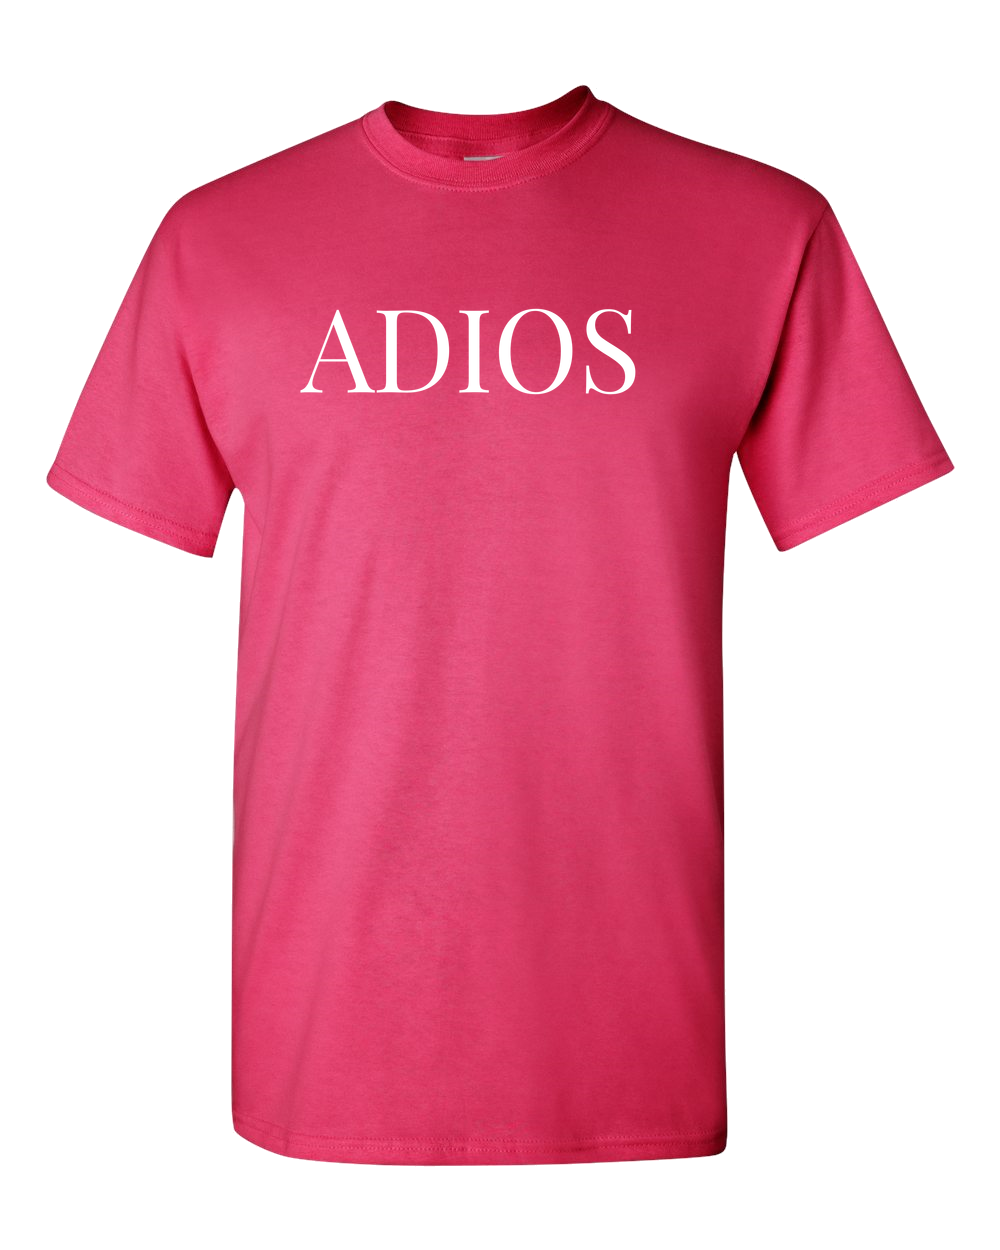 Adios Adios Spanish Funny T-Shirt